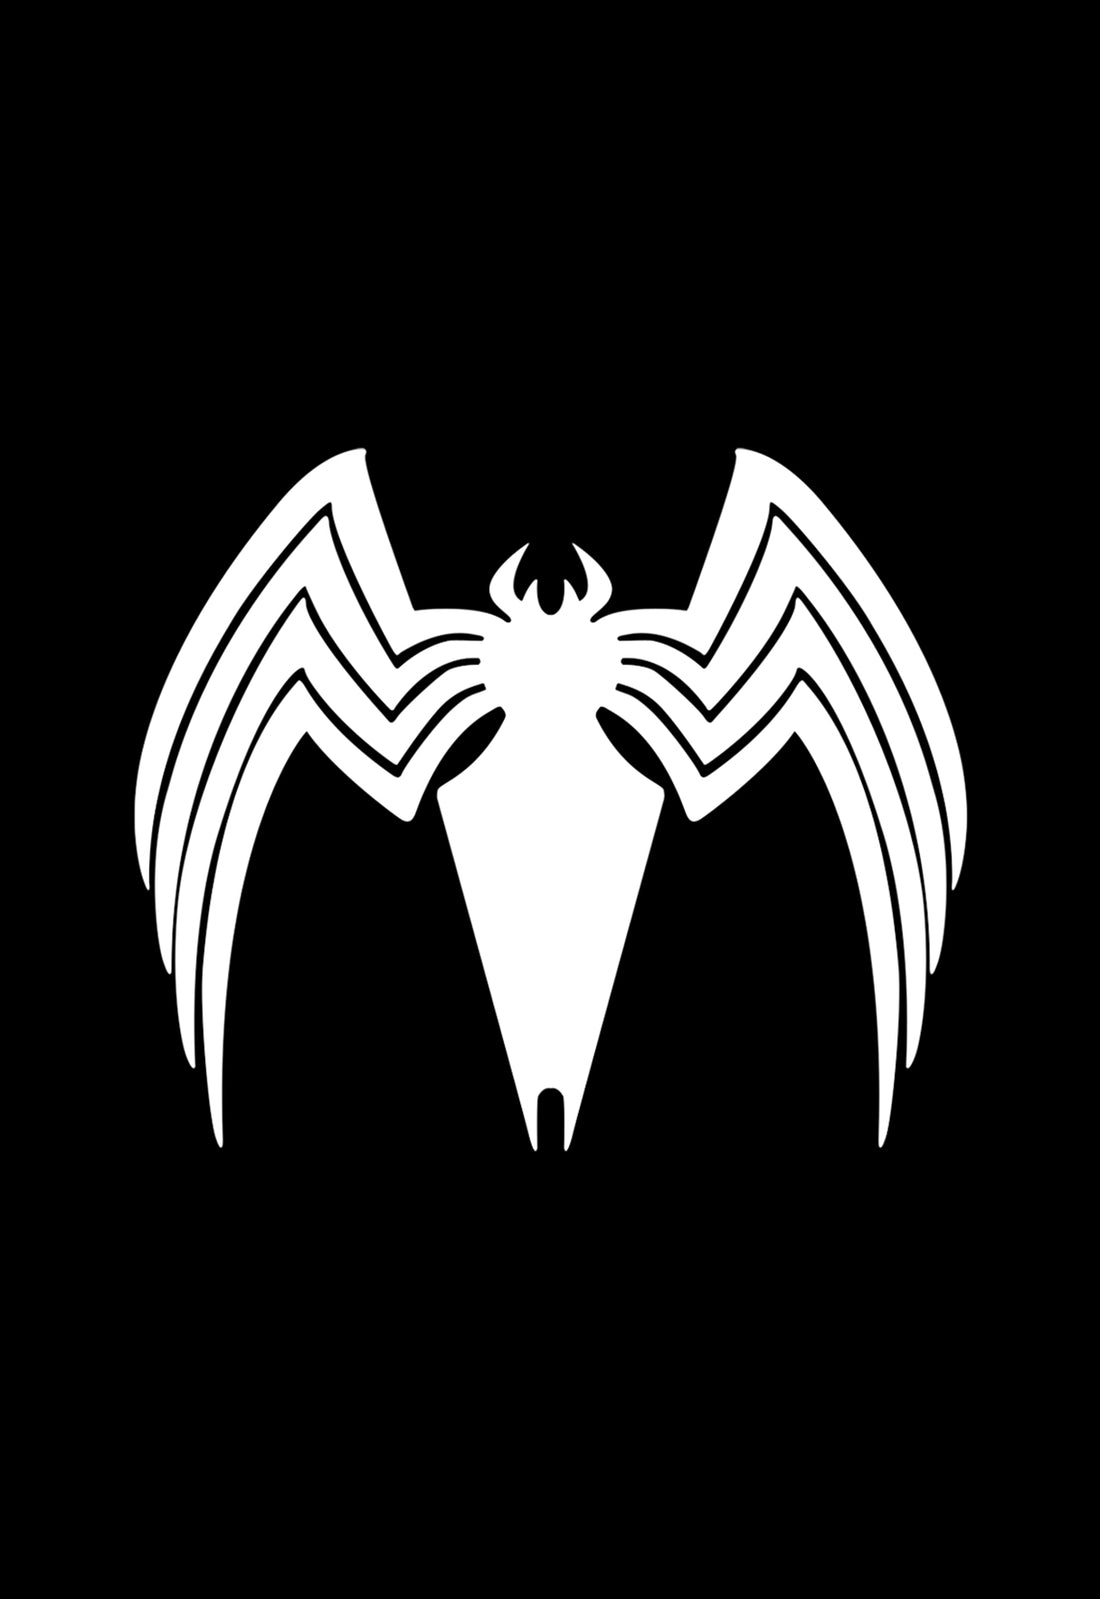 Symbiote